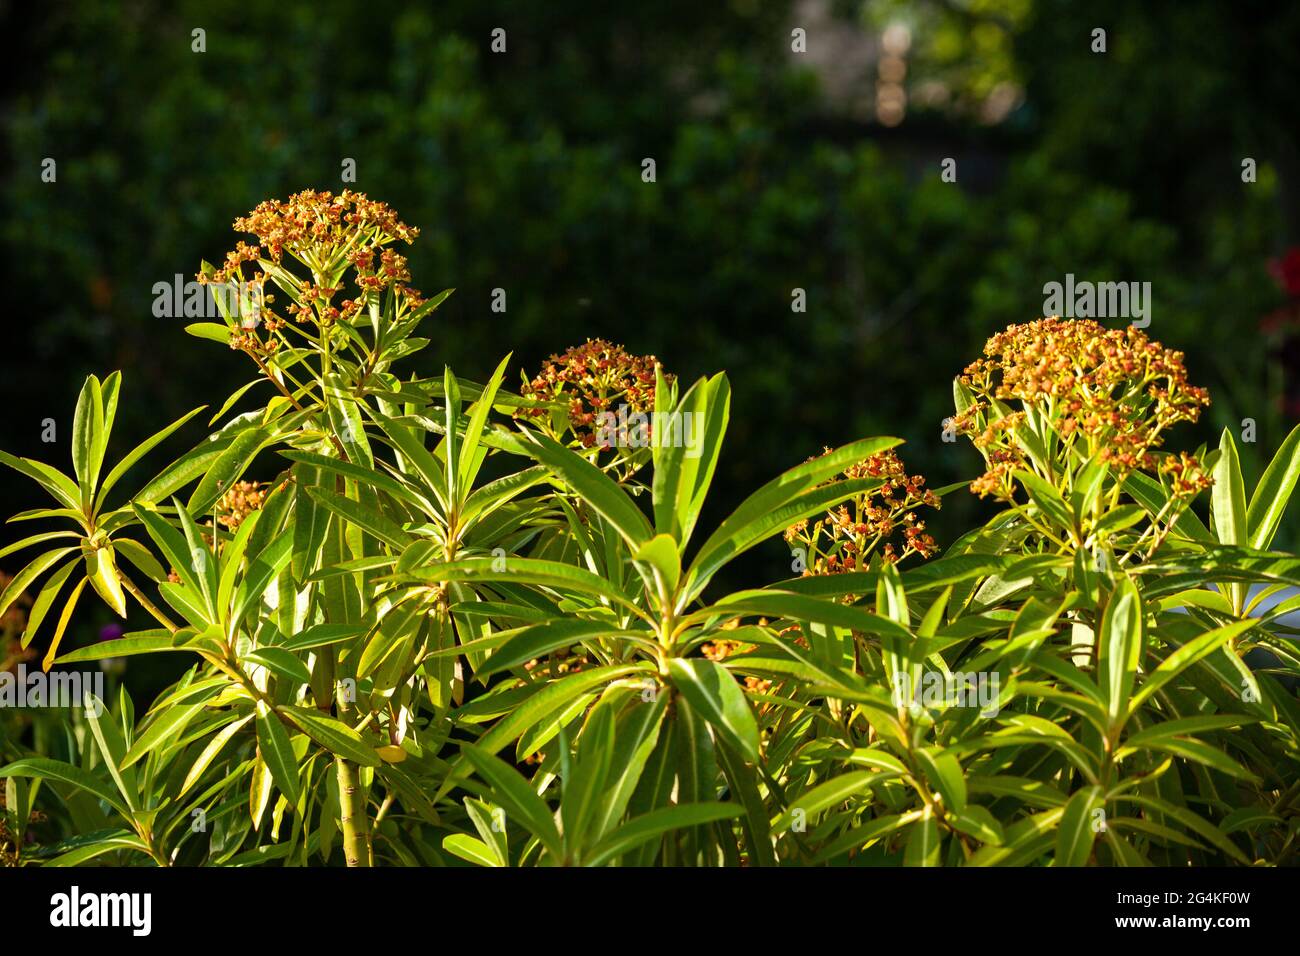 Der Honigspurge, die Eforbia mellifera, ist ein hübscher, halbimmergrüner Strauch mit seinen honigduftenden Sommerblumen, die bei Bienen beliebt sind. Stockfoto